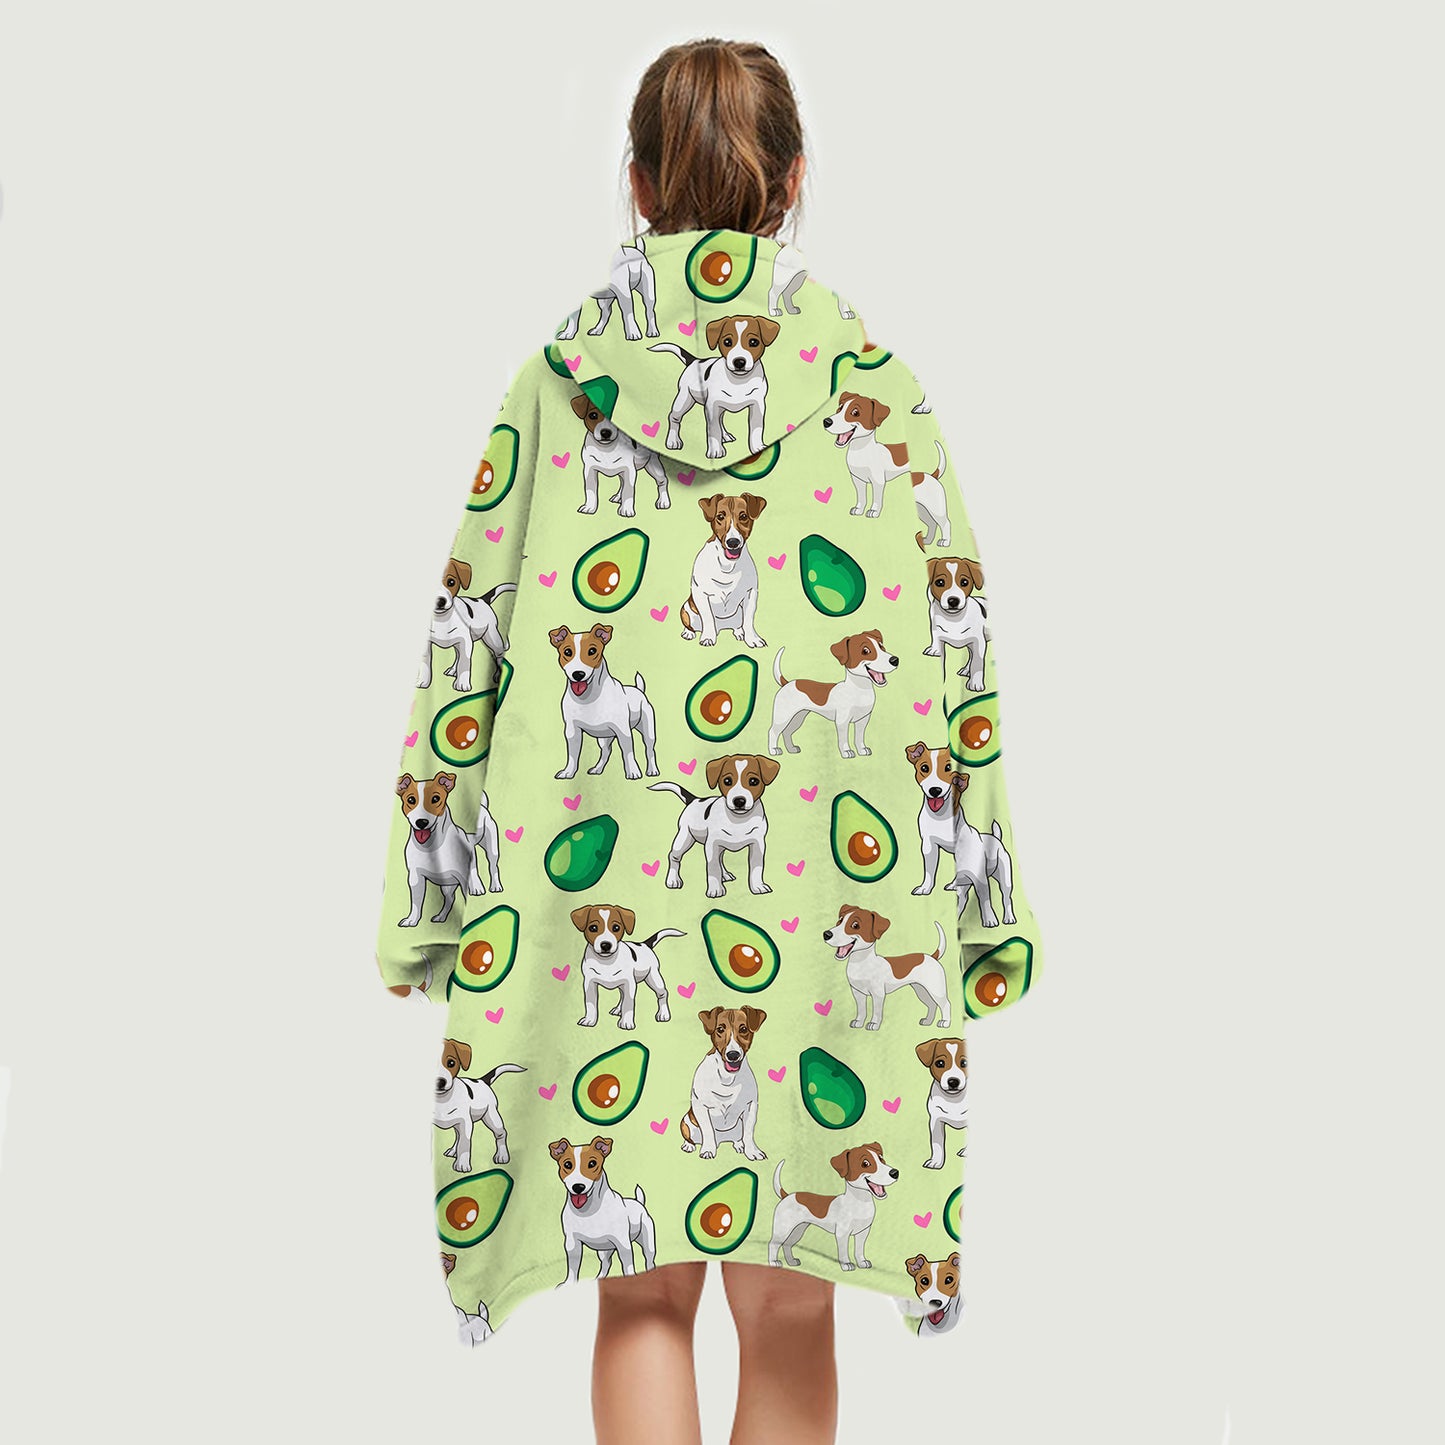 I Love Avocados - Jack Russell Terrier Fleece Blanket Hoodie